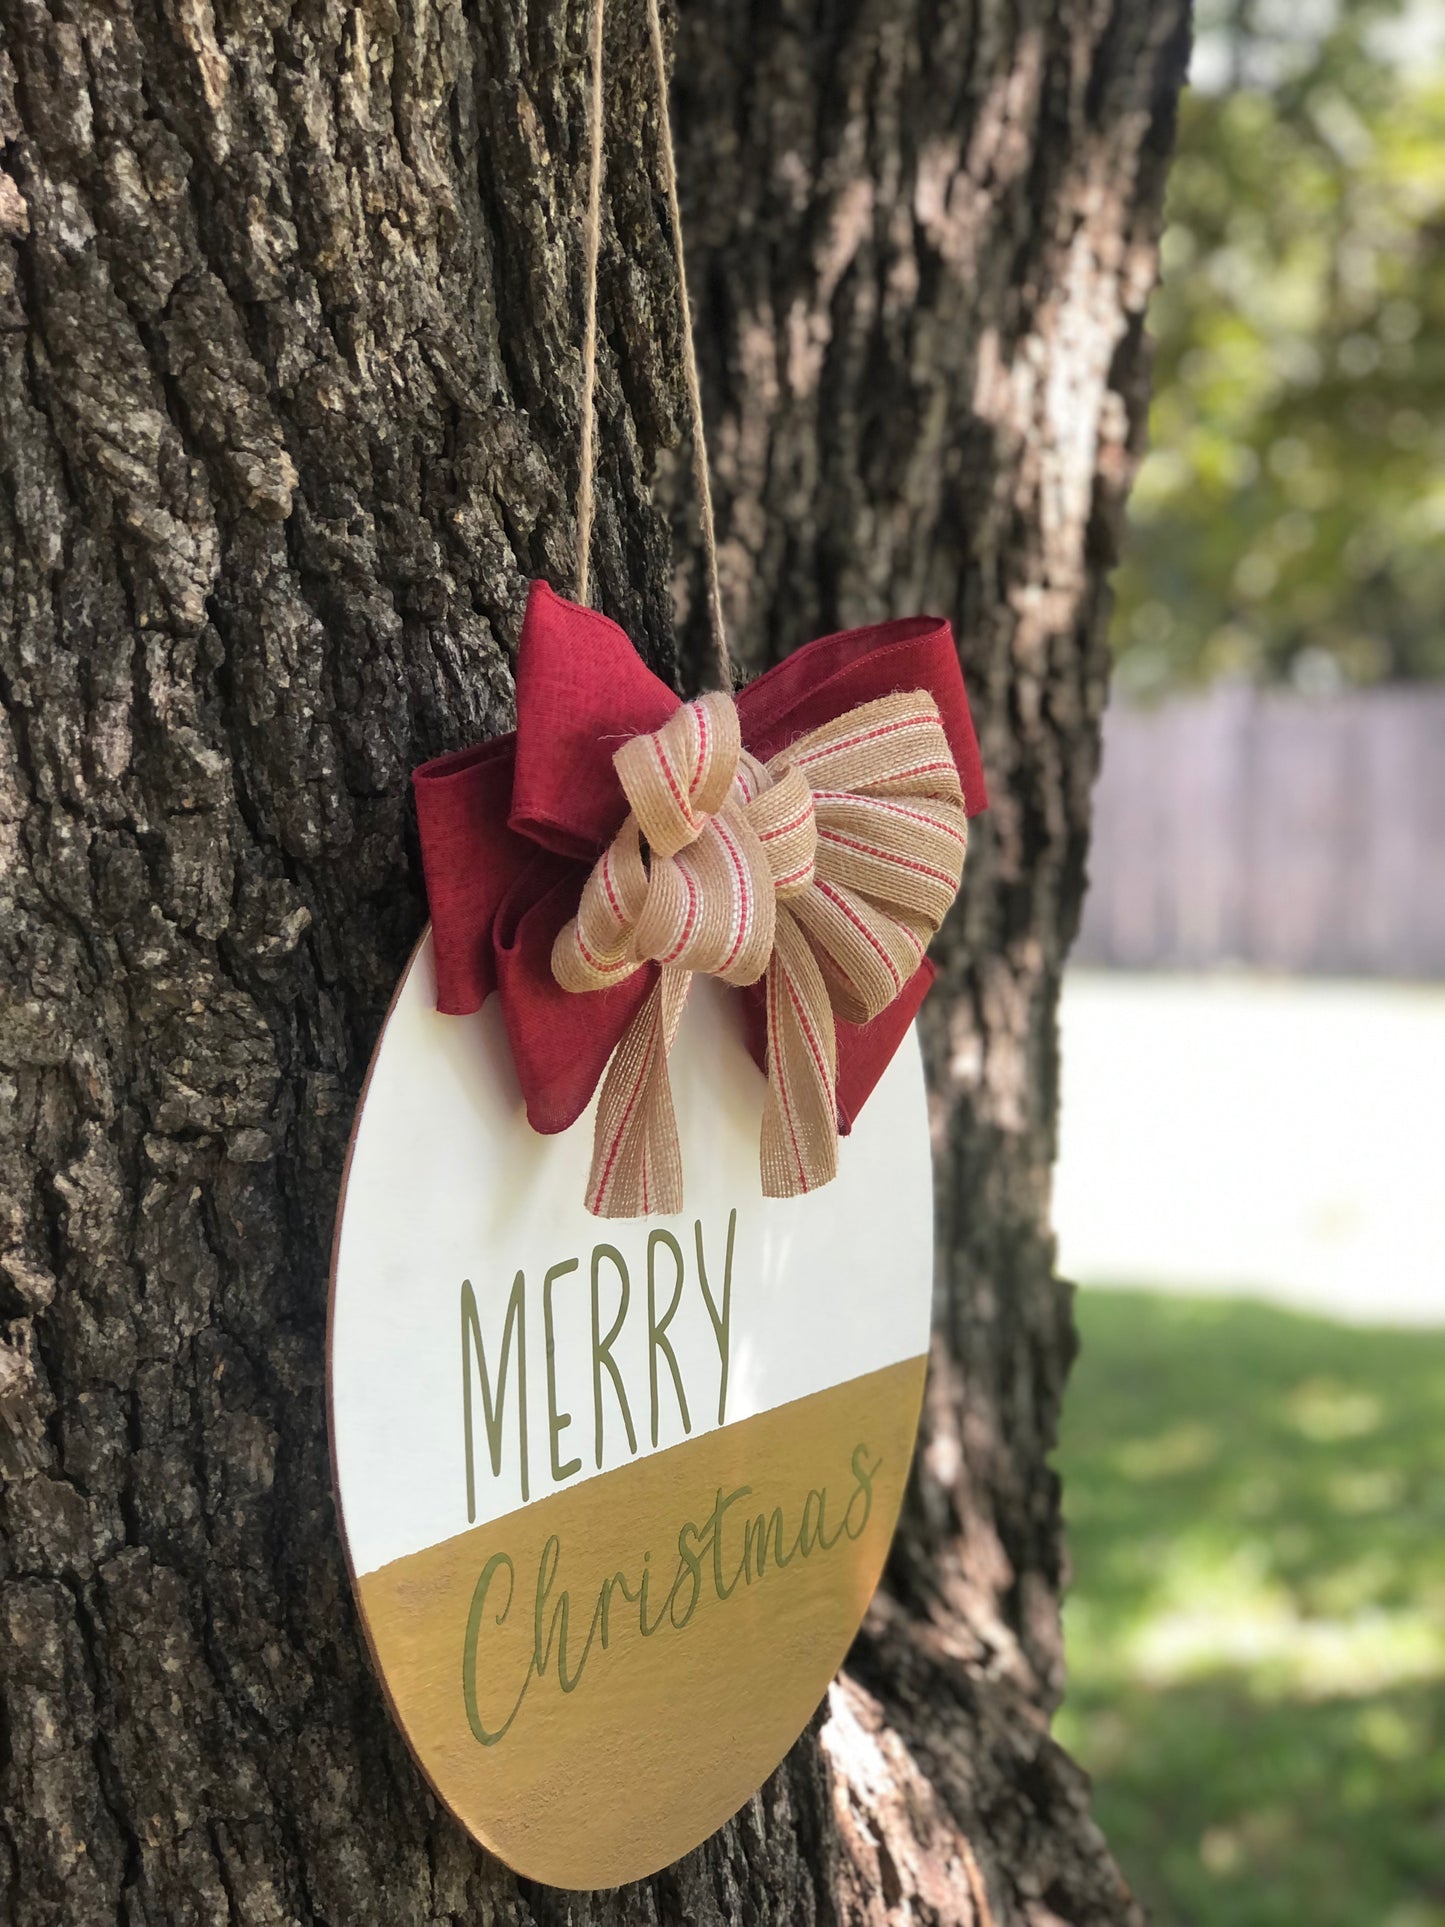 Wood Round Door Hanger| Door Hanger| Merry Christmas Door Decor| Front Porch Decor| Christmas Decor| Christmas| Holidays